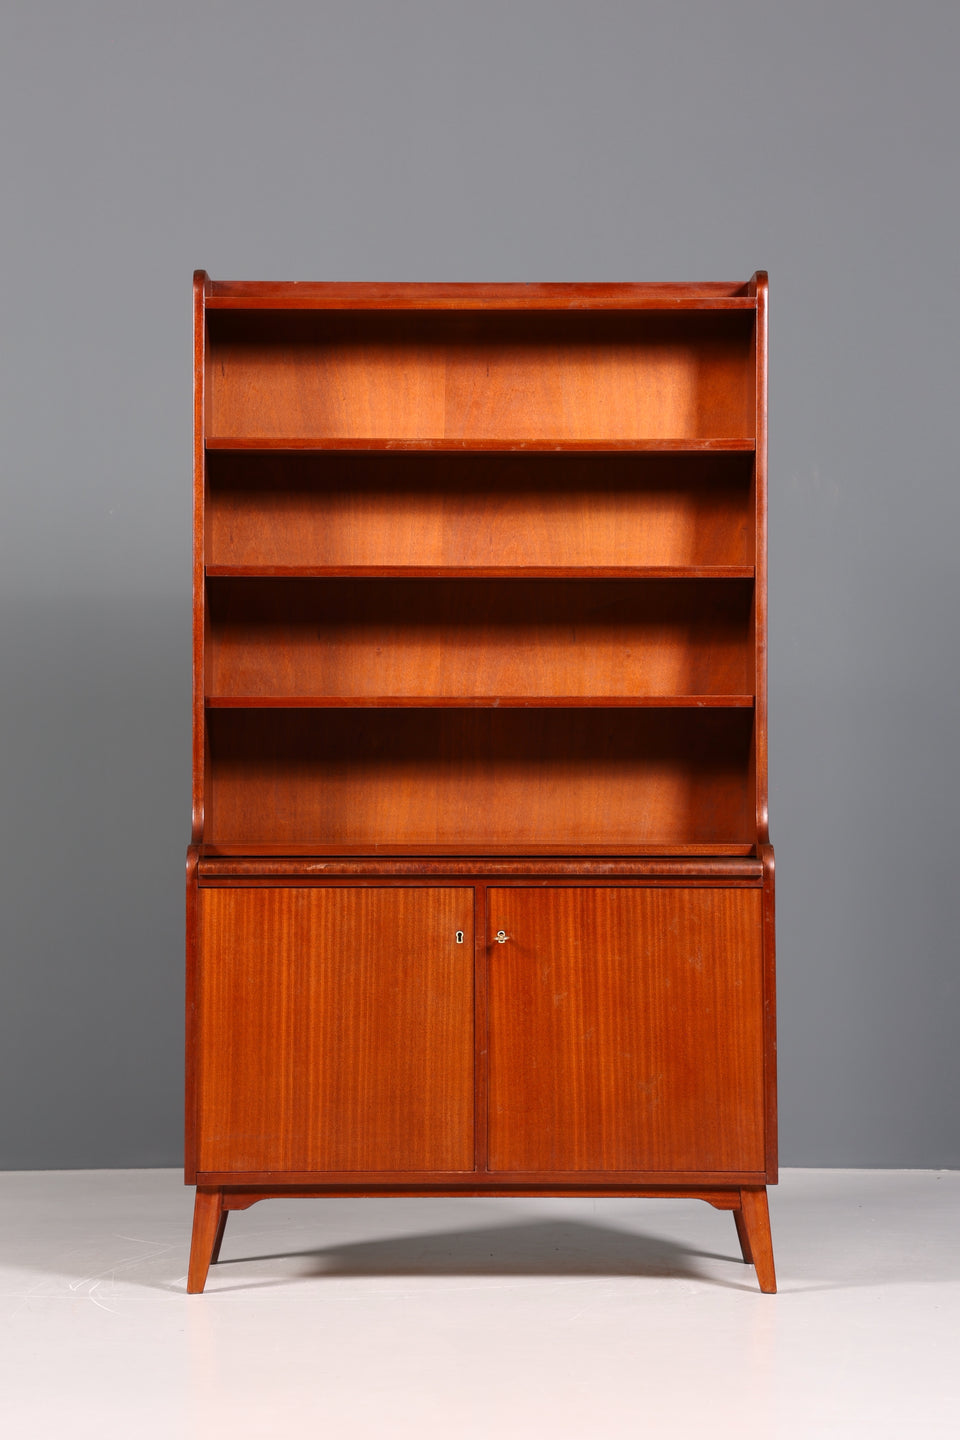 Wunderschöner Mid Century Schrank Bücherregal Vintage Sekretär Highboard Holz Regal 2 von 2